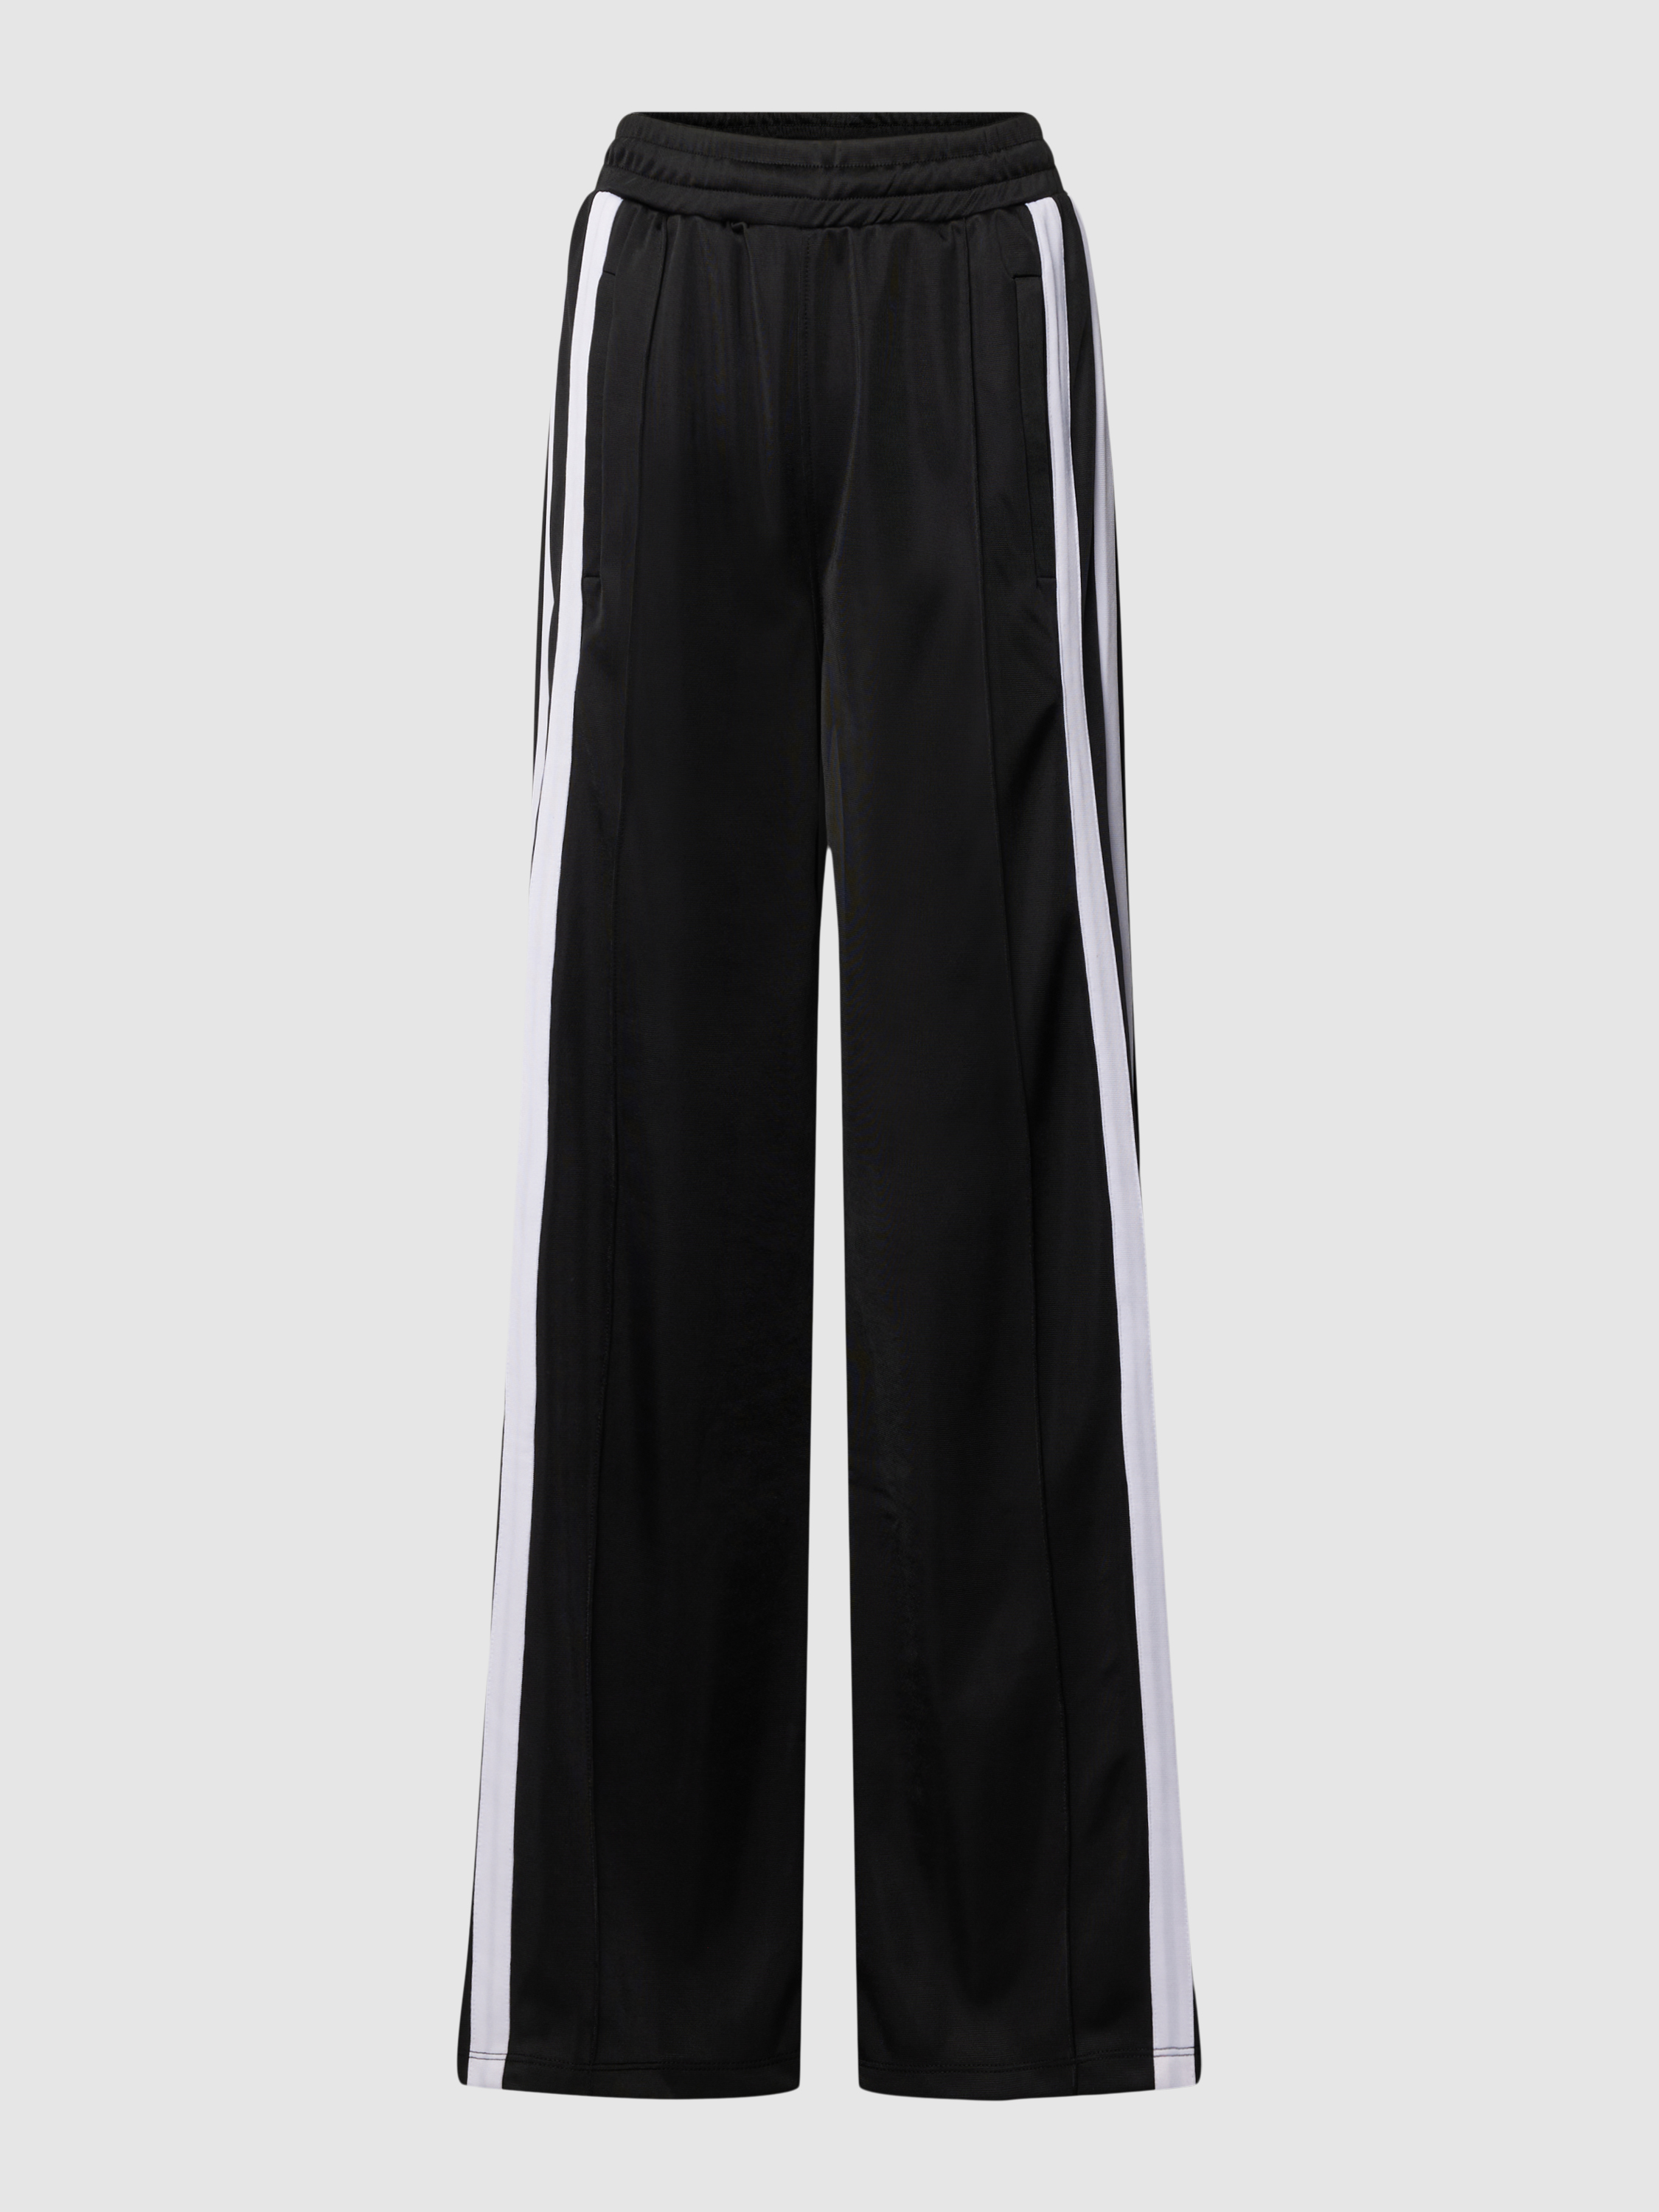 Спортивные брюки женские Karo Kauer 1903335 черные XL (доставка из-за рубежа)